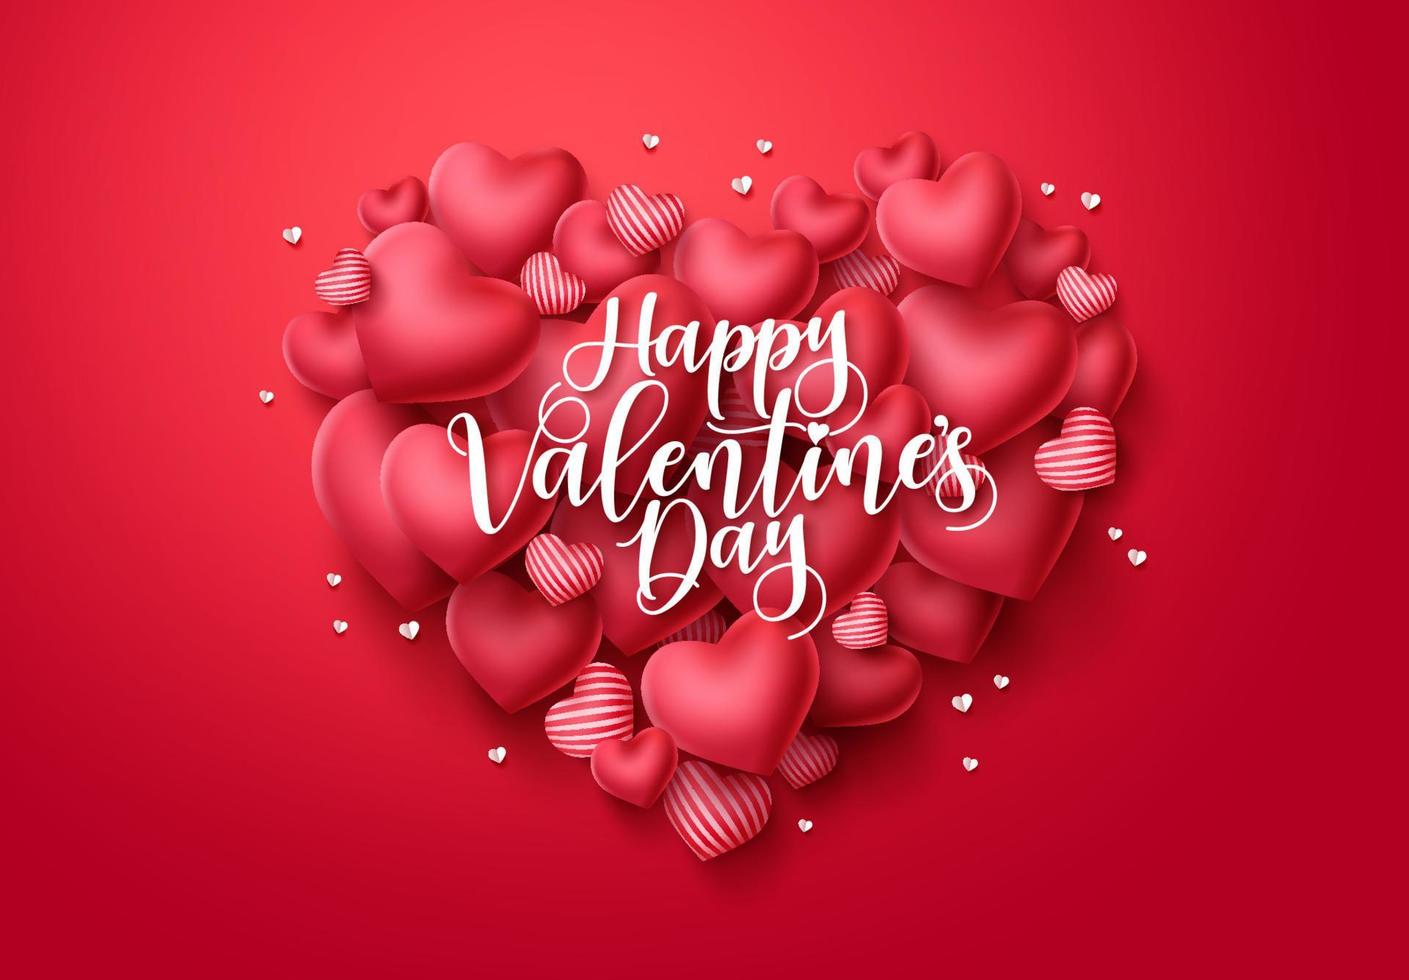 cartão de saudação de vetor de corações de dia dos namorados. feliz dia dos namorados texto com elementos de forma de coração em fundo vermelho. ilustração vetorial.